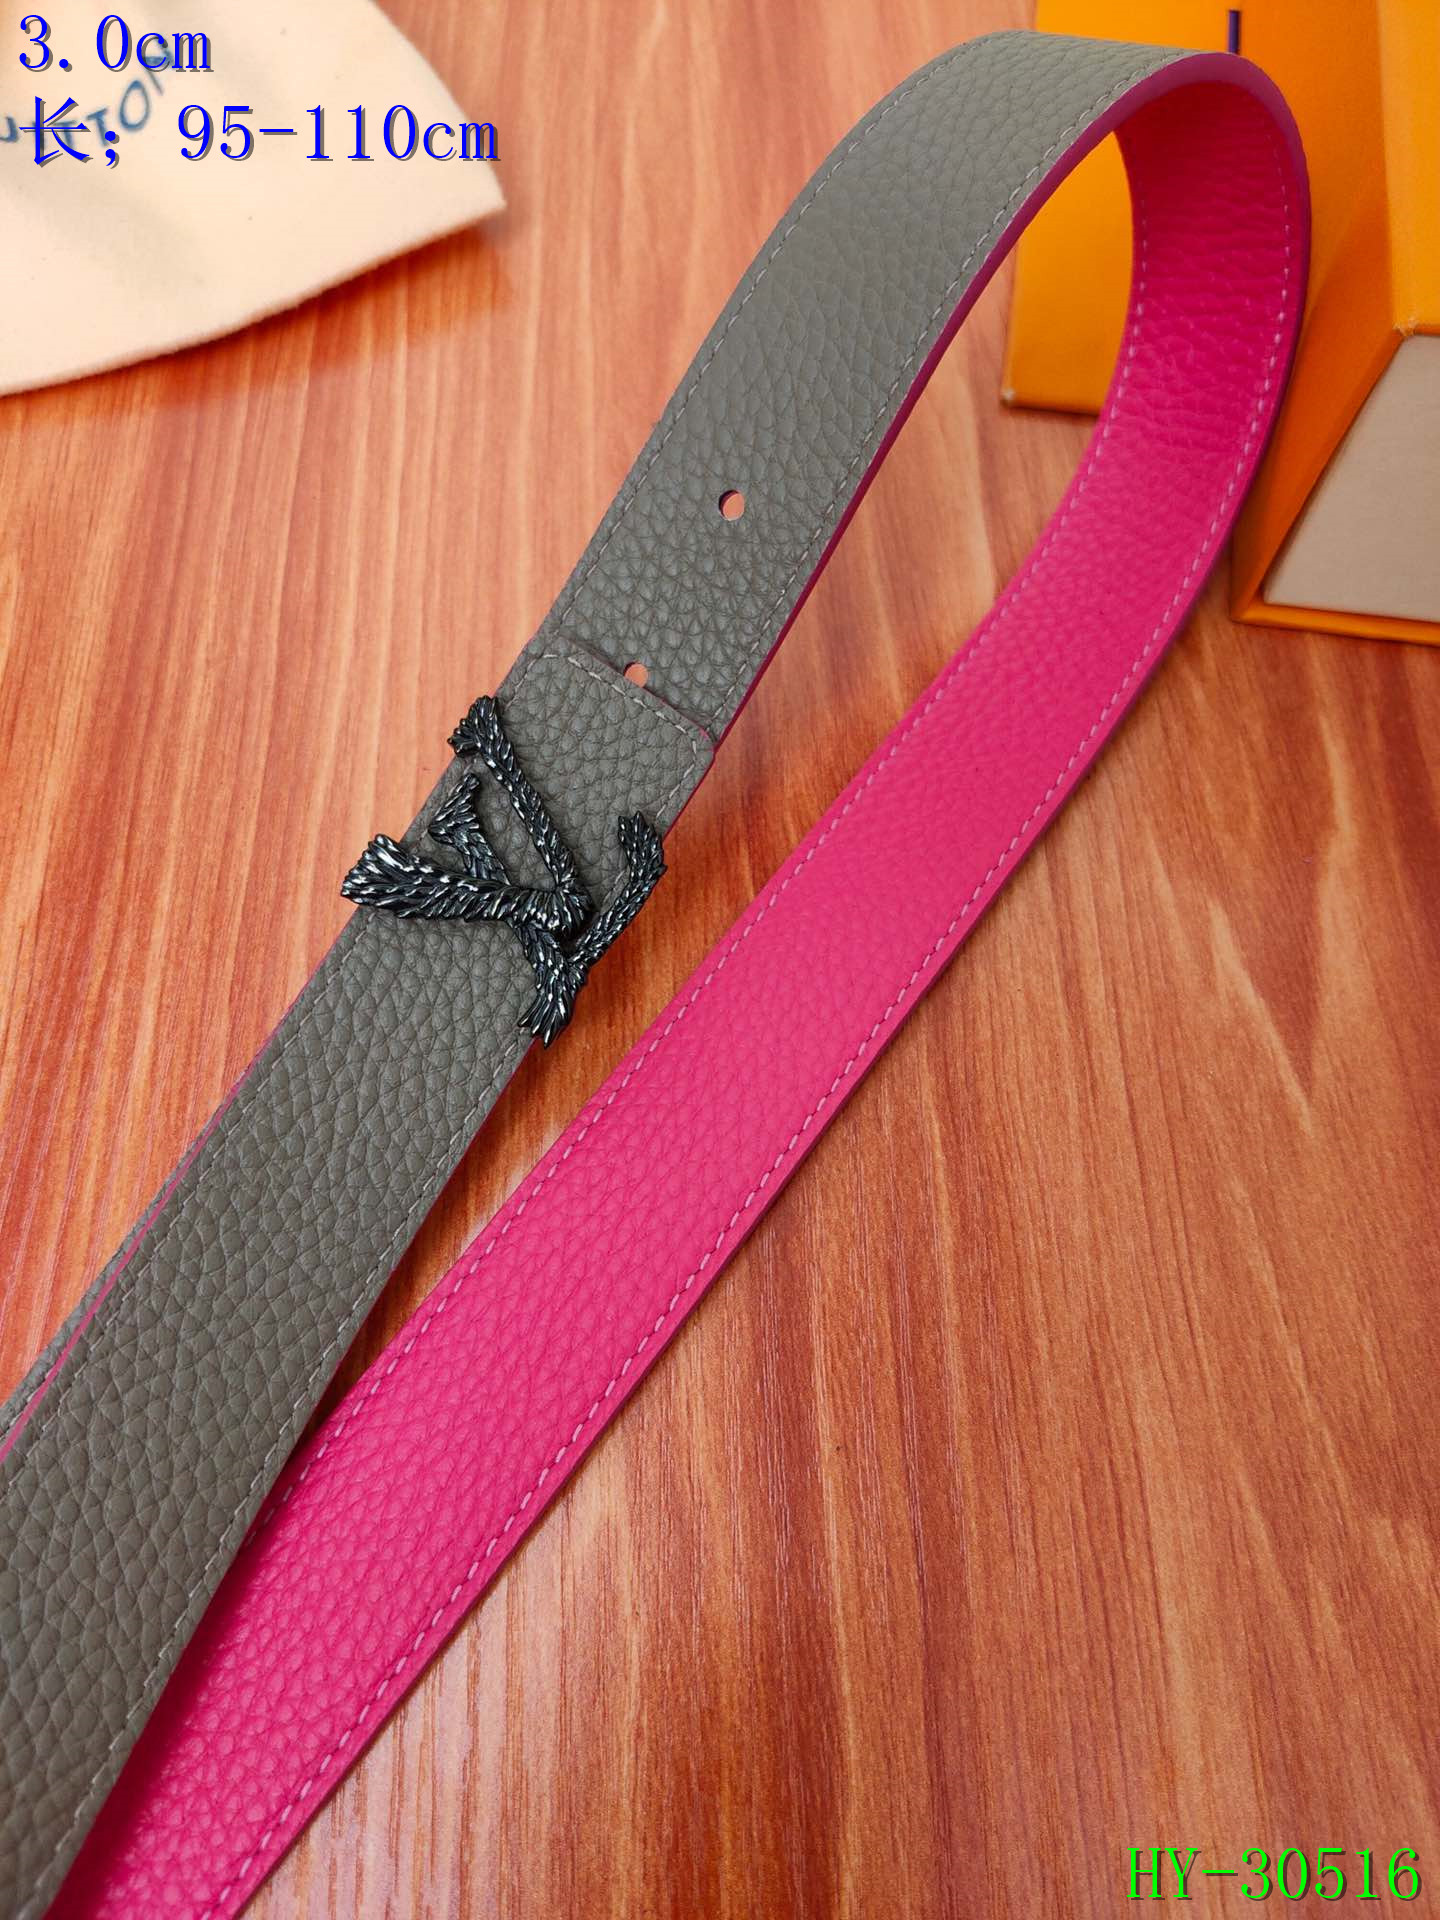 Cheap 2020 Cheap Louis Vuitton 3.0 cm Width Belts # 217750,$45 [FB217750] - Designer ...